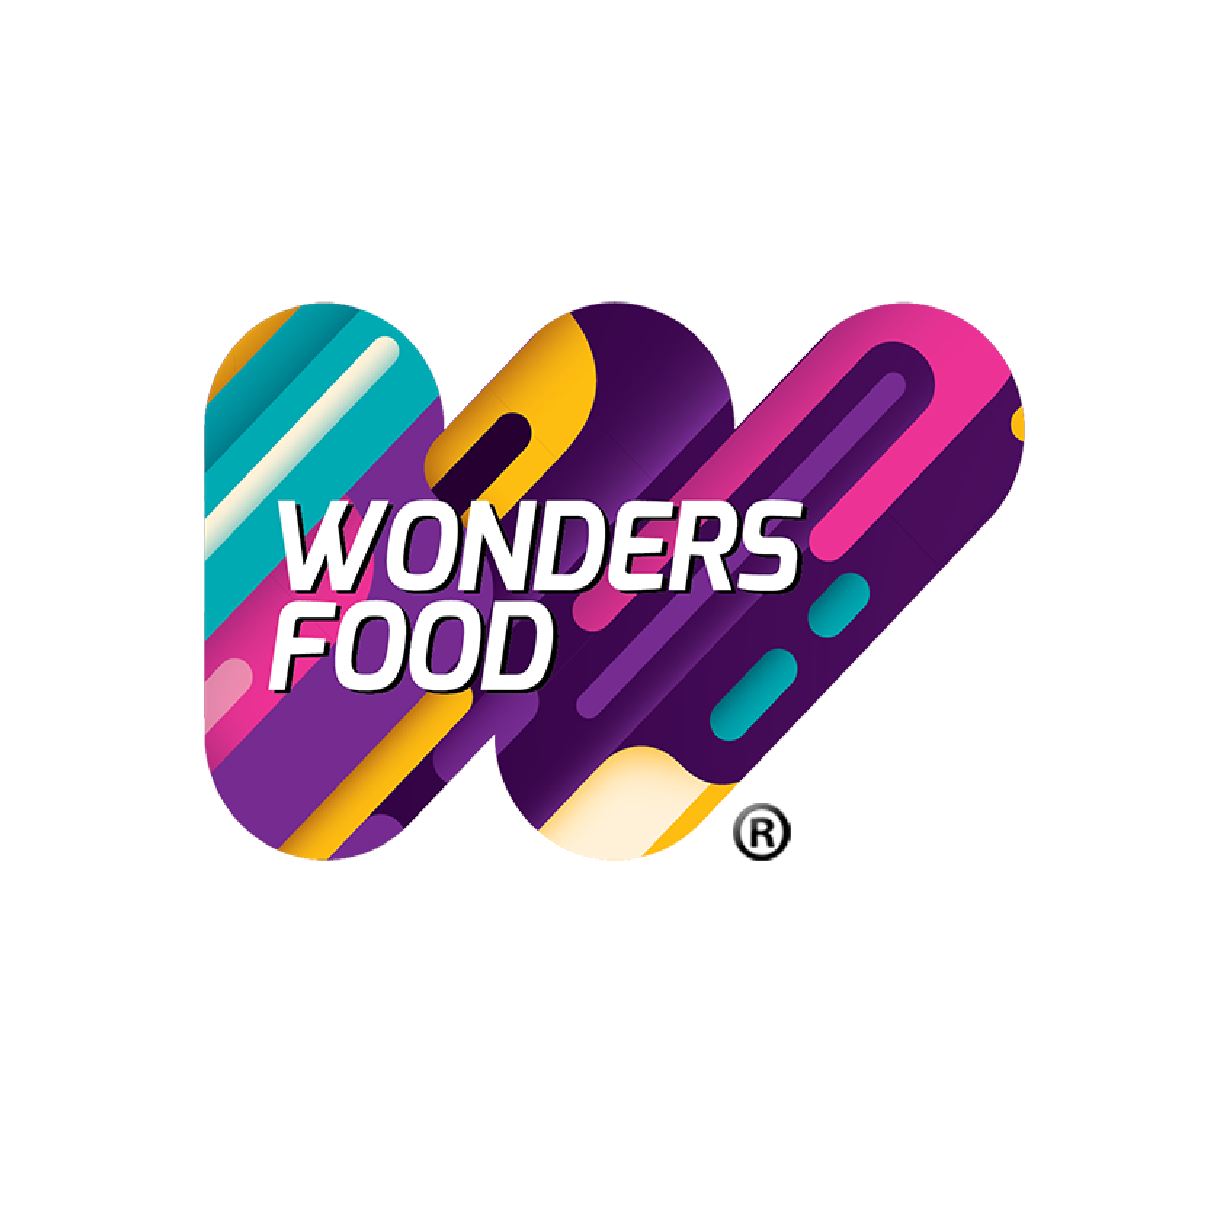 Wonders food